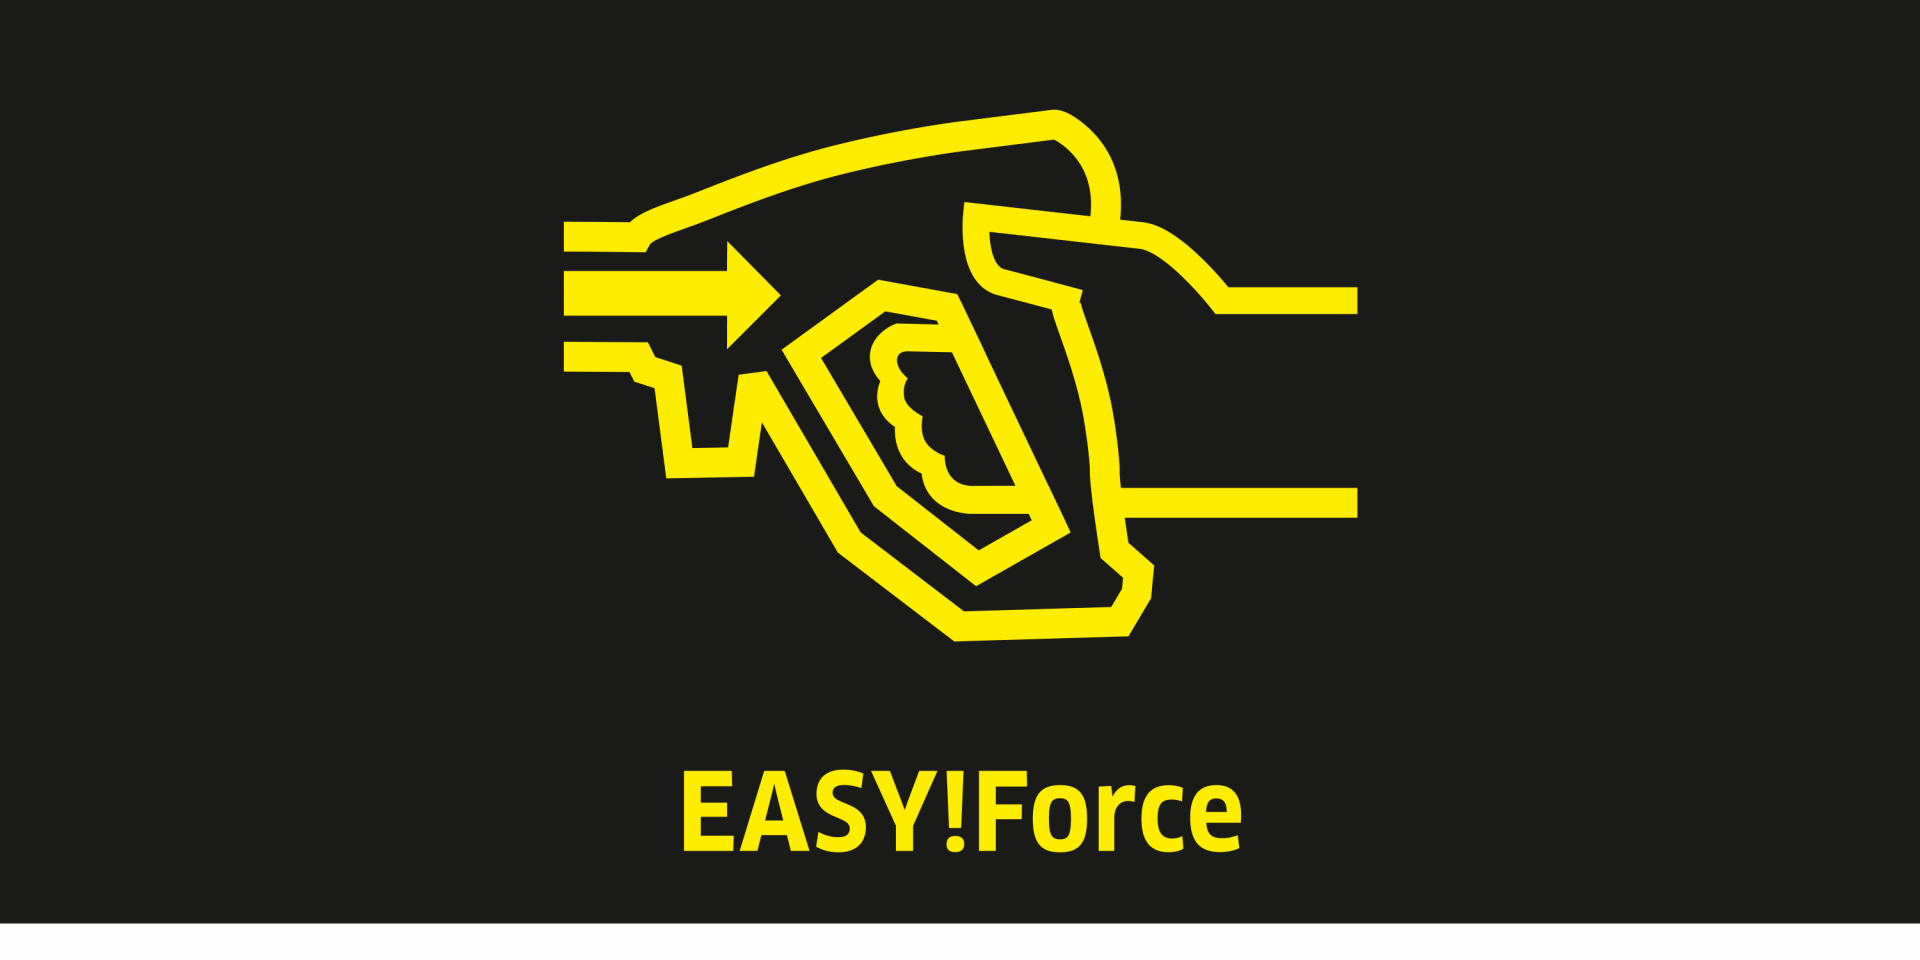 01_EasyForce